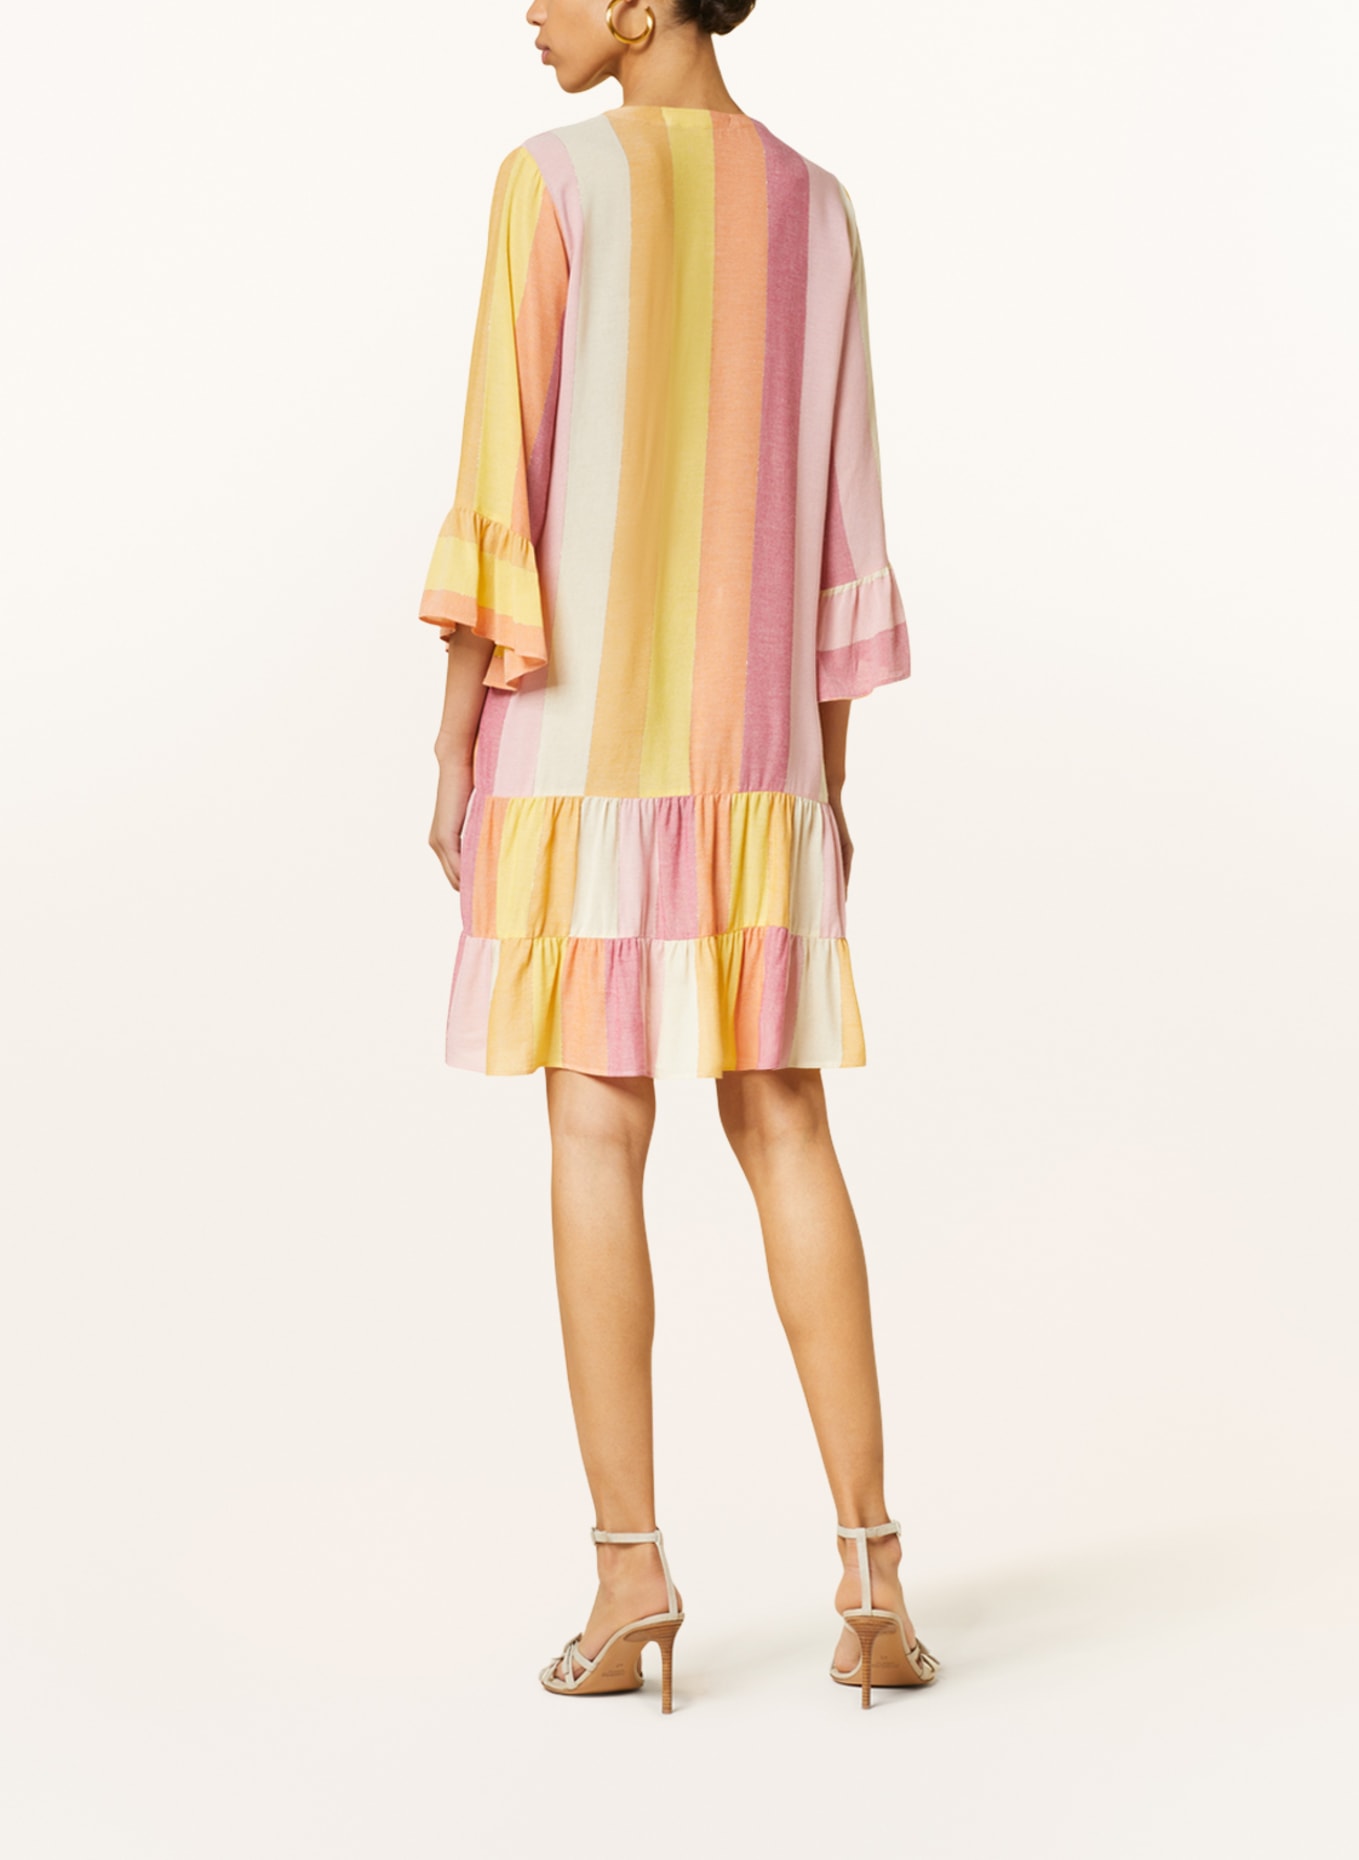 VALÉRIE KHALFON Kleid MONTANA mit 3/4-Arm und Glanzgarn, Farbe: ROSA/ HELLORANGE/ GELB (Bild 3)